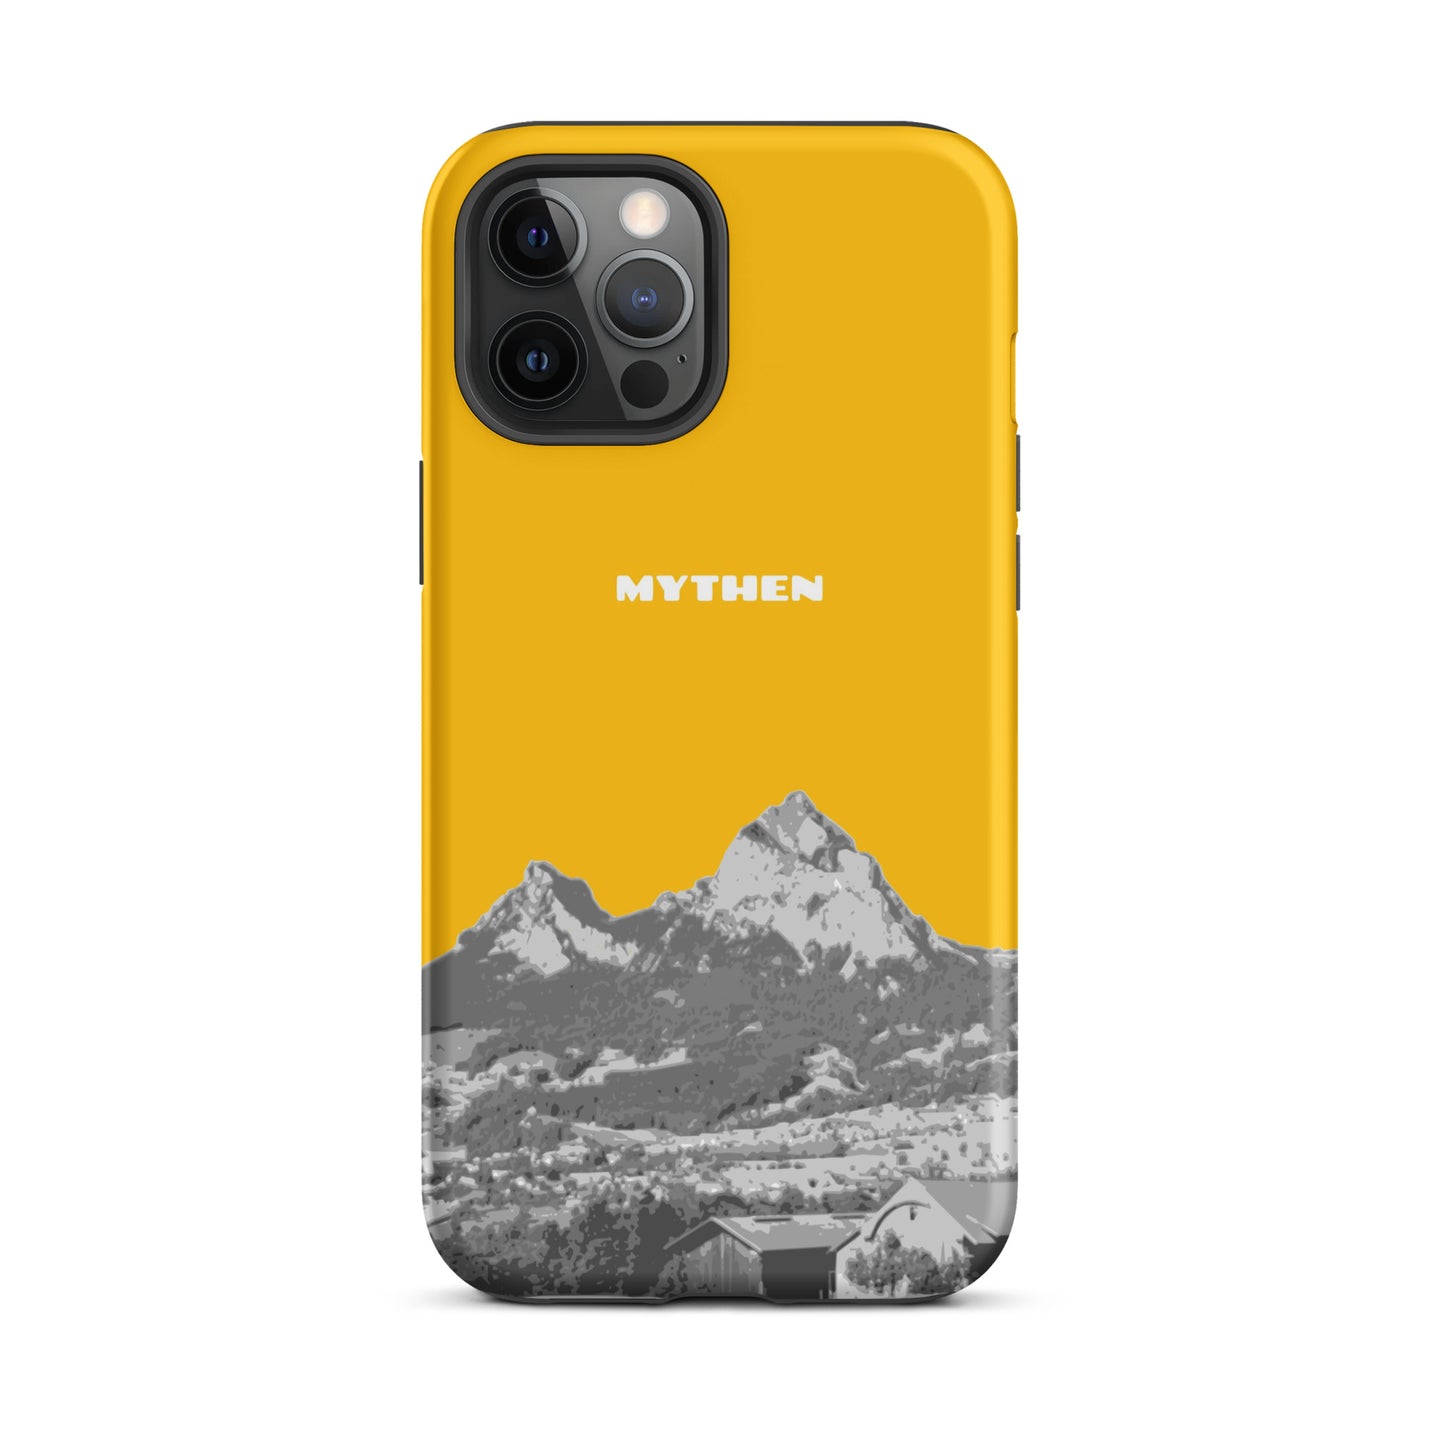 Hülle für das iPhone 12 Pro Max von Apple in der Farbe Goldgelb, dass den Grossen Mythen und den Kleinen Mythen bei Schwyz zeigt. 